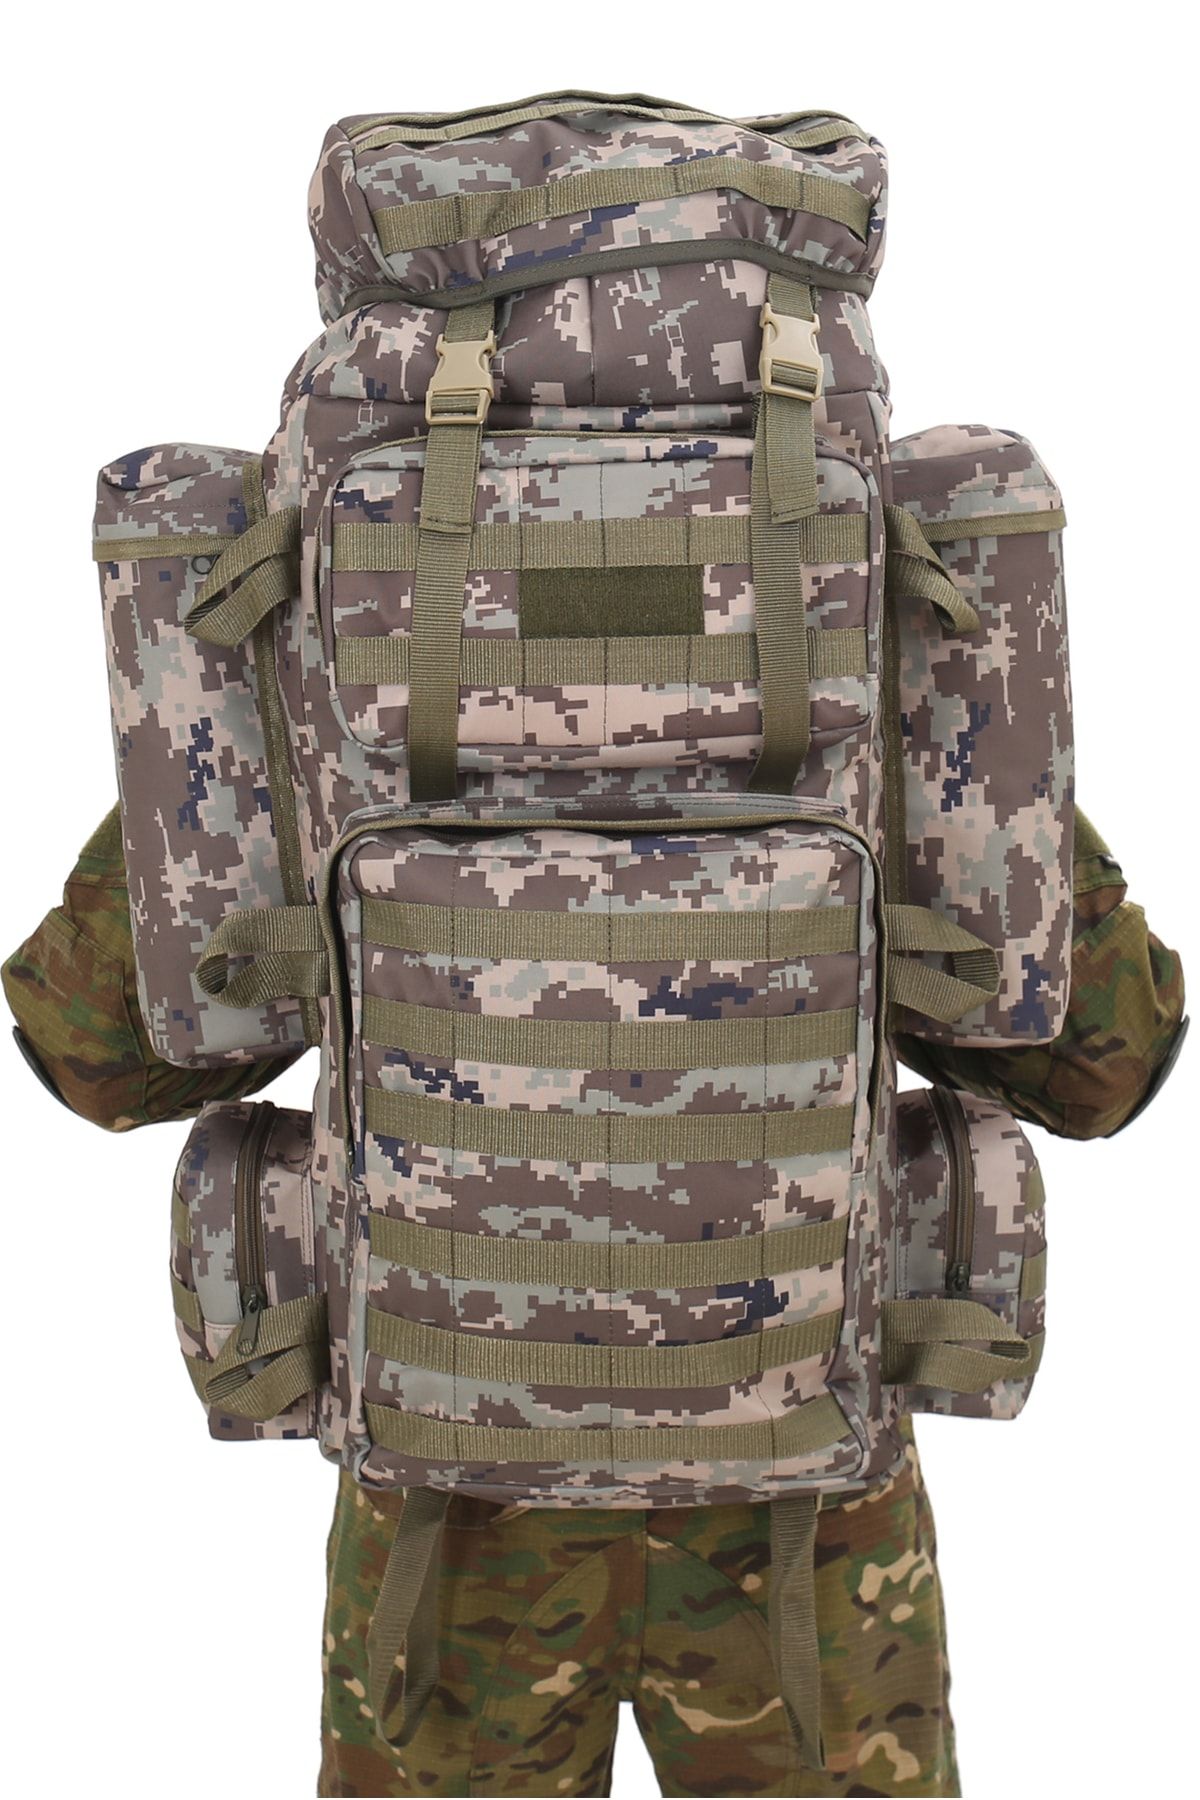 SİNGLE SWORD Taktik Operasyon Çantası Asker Çantası Tactical Çanta Askeri Sırt Çantası Dağcı Çantası 100 10 Litre